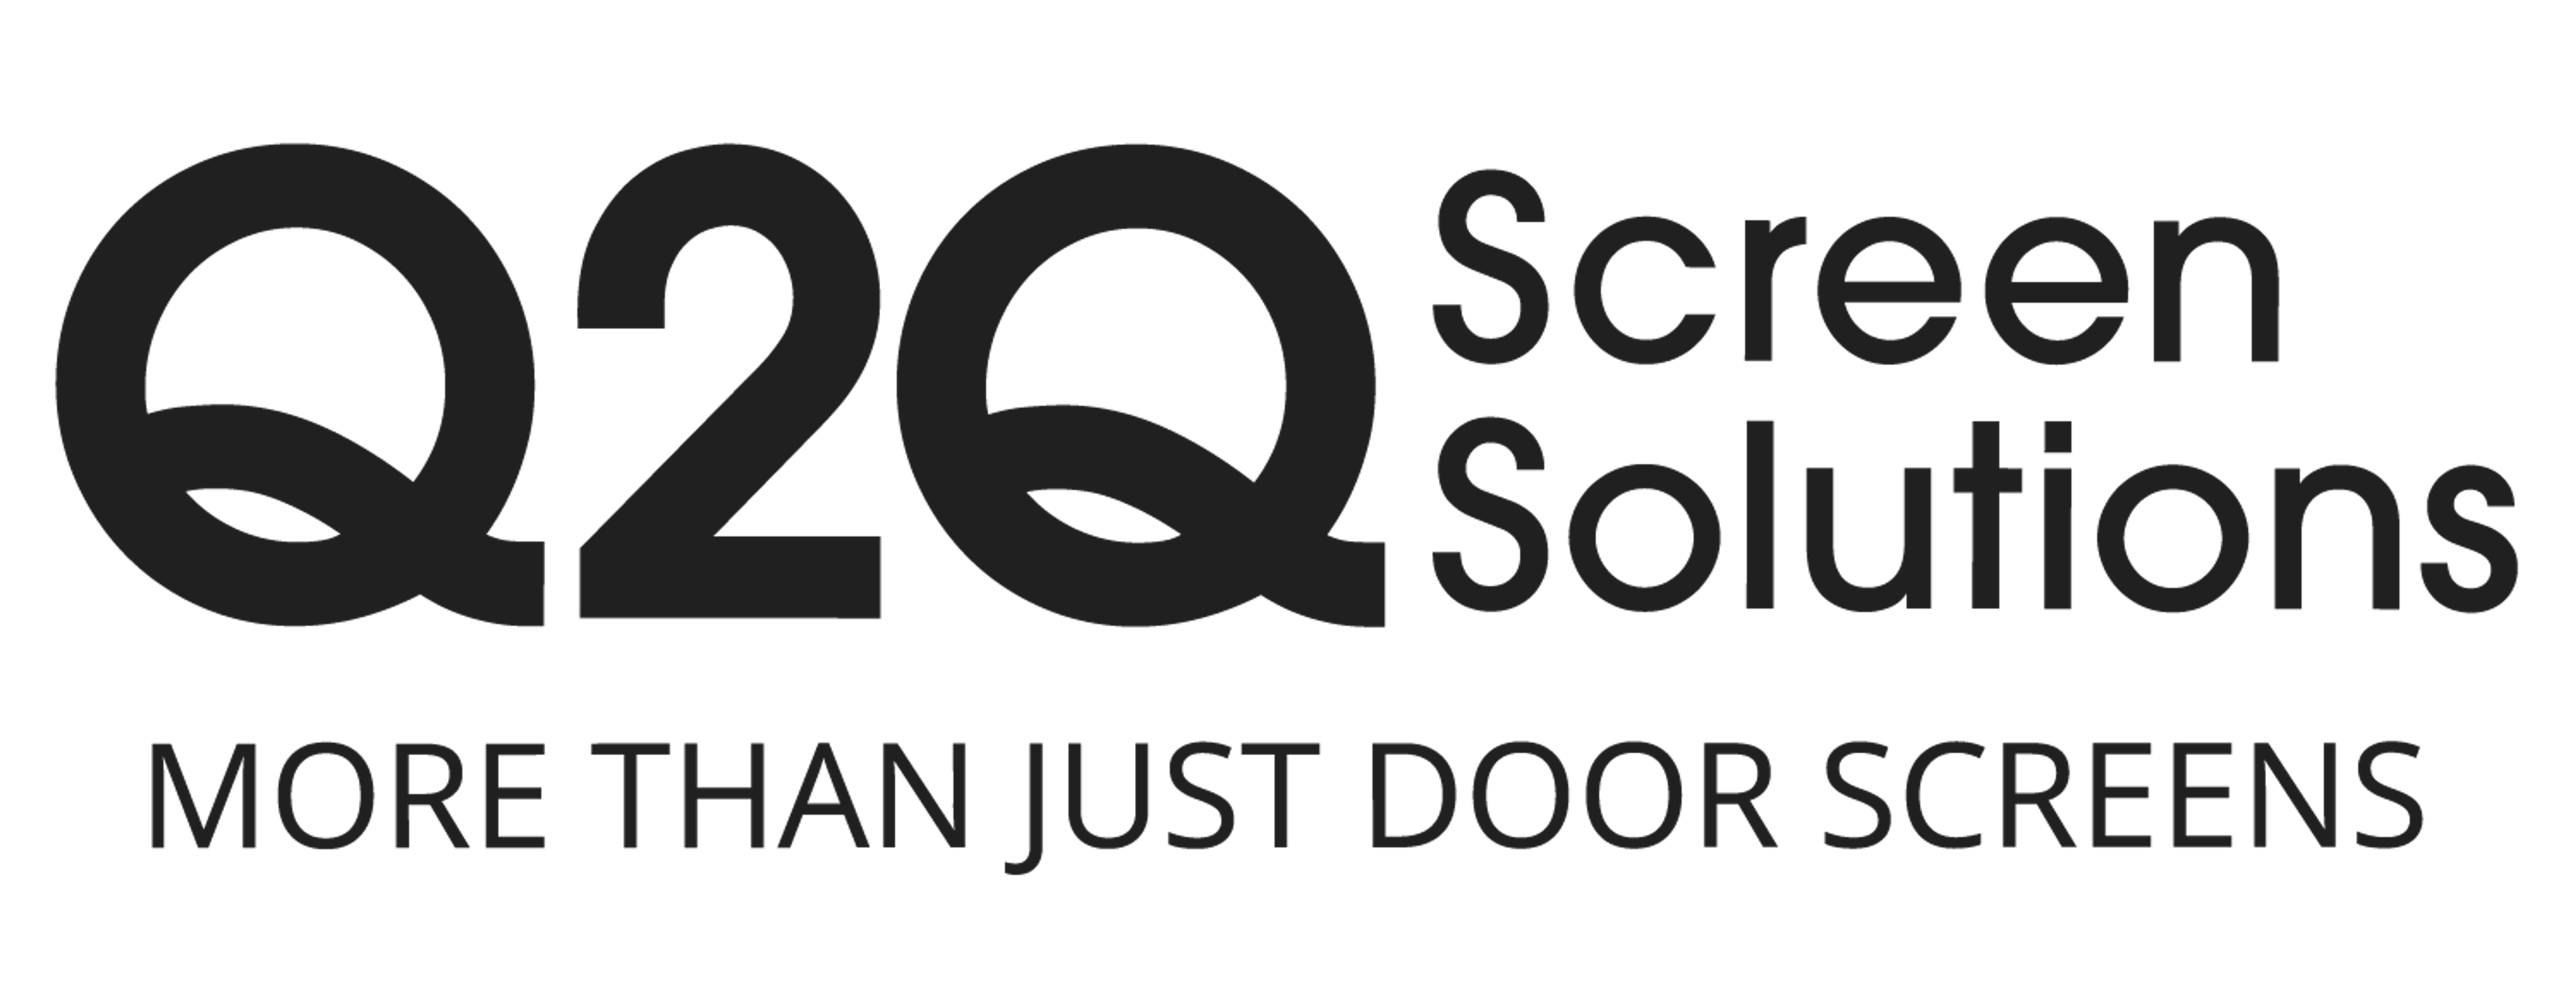 Q2Q Screen Solutions